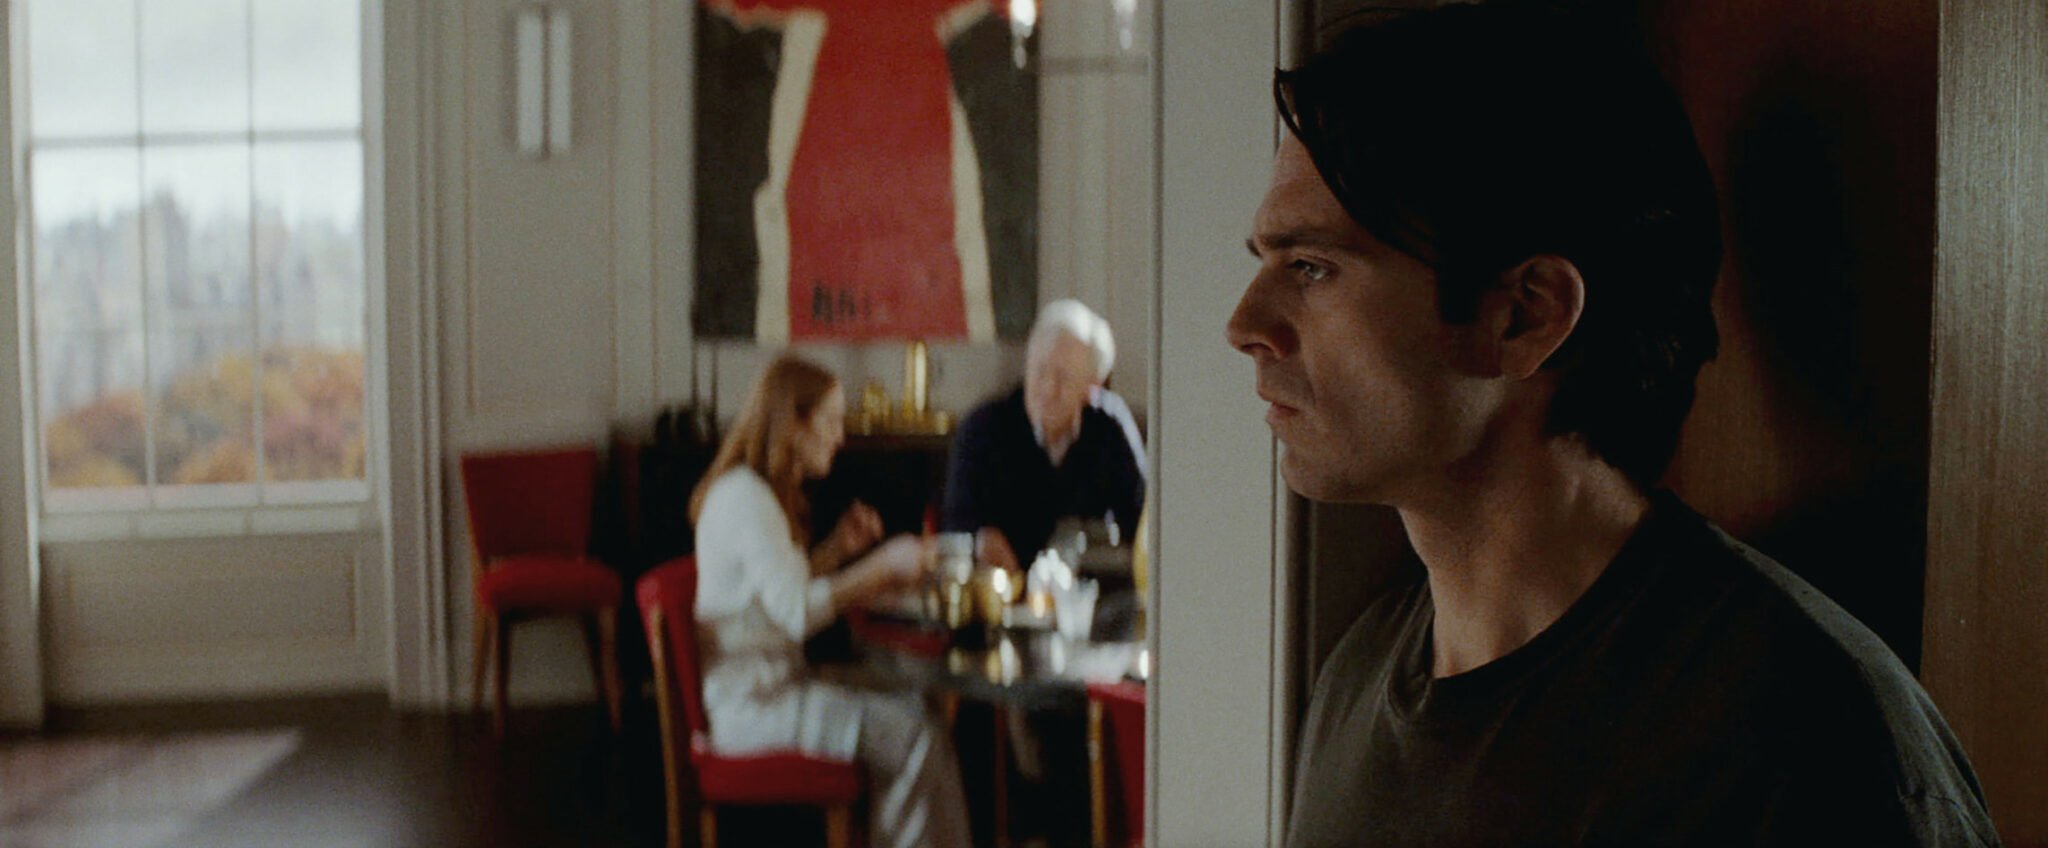 Sebastian Stan im Türrahmen stehend im Vordergrund, hinten Julianne Moore und John Lithgow an einem kleinen Tisch sitzend. Sharper